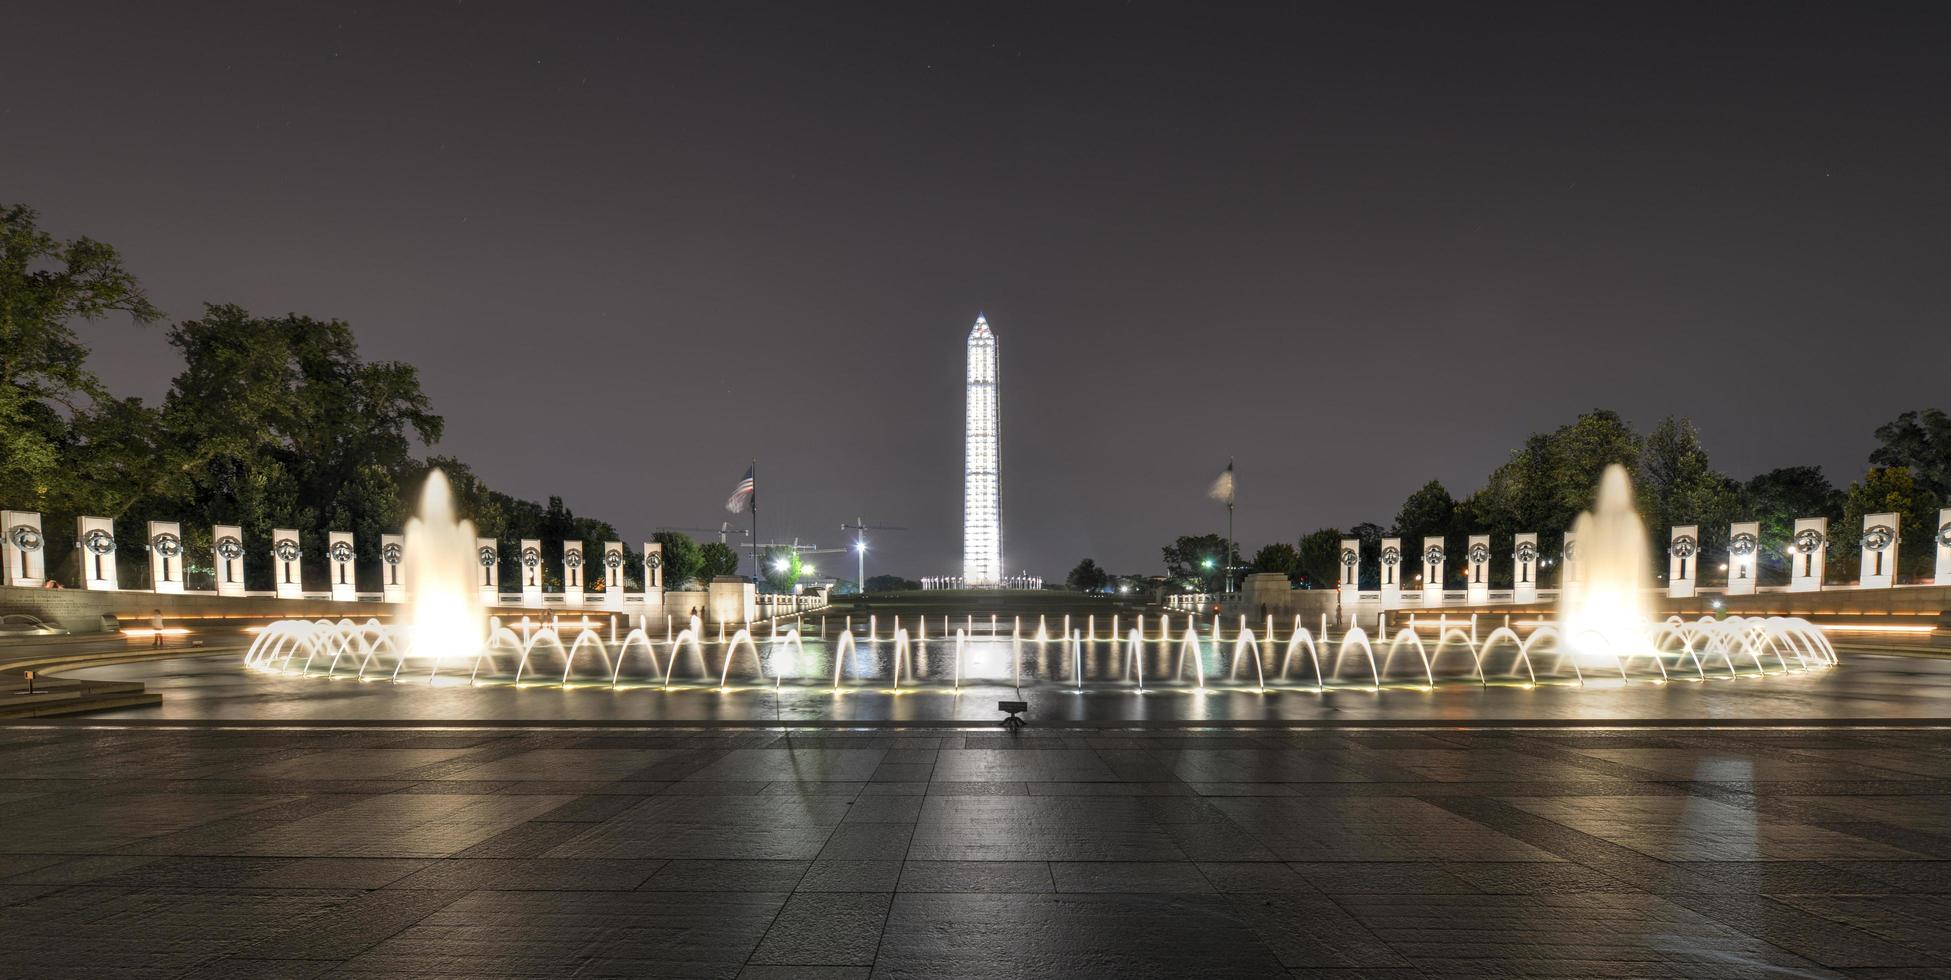 värld krig ii minnesmärke på natt, Washington dc, usa, 2022 foto